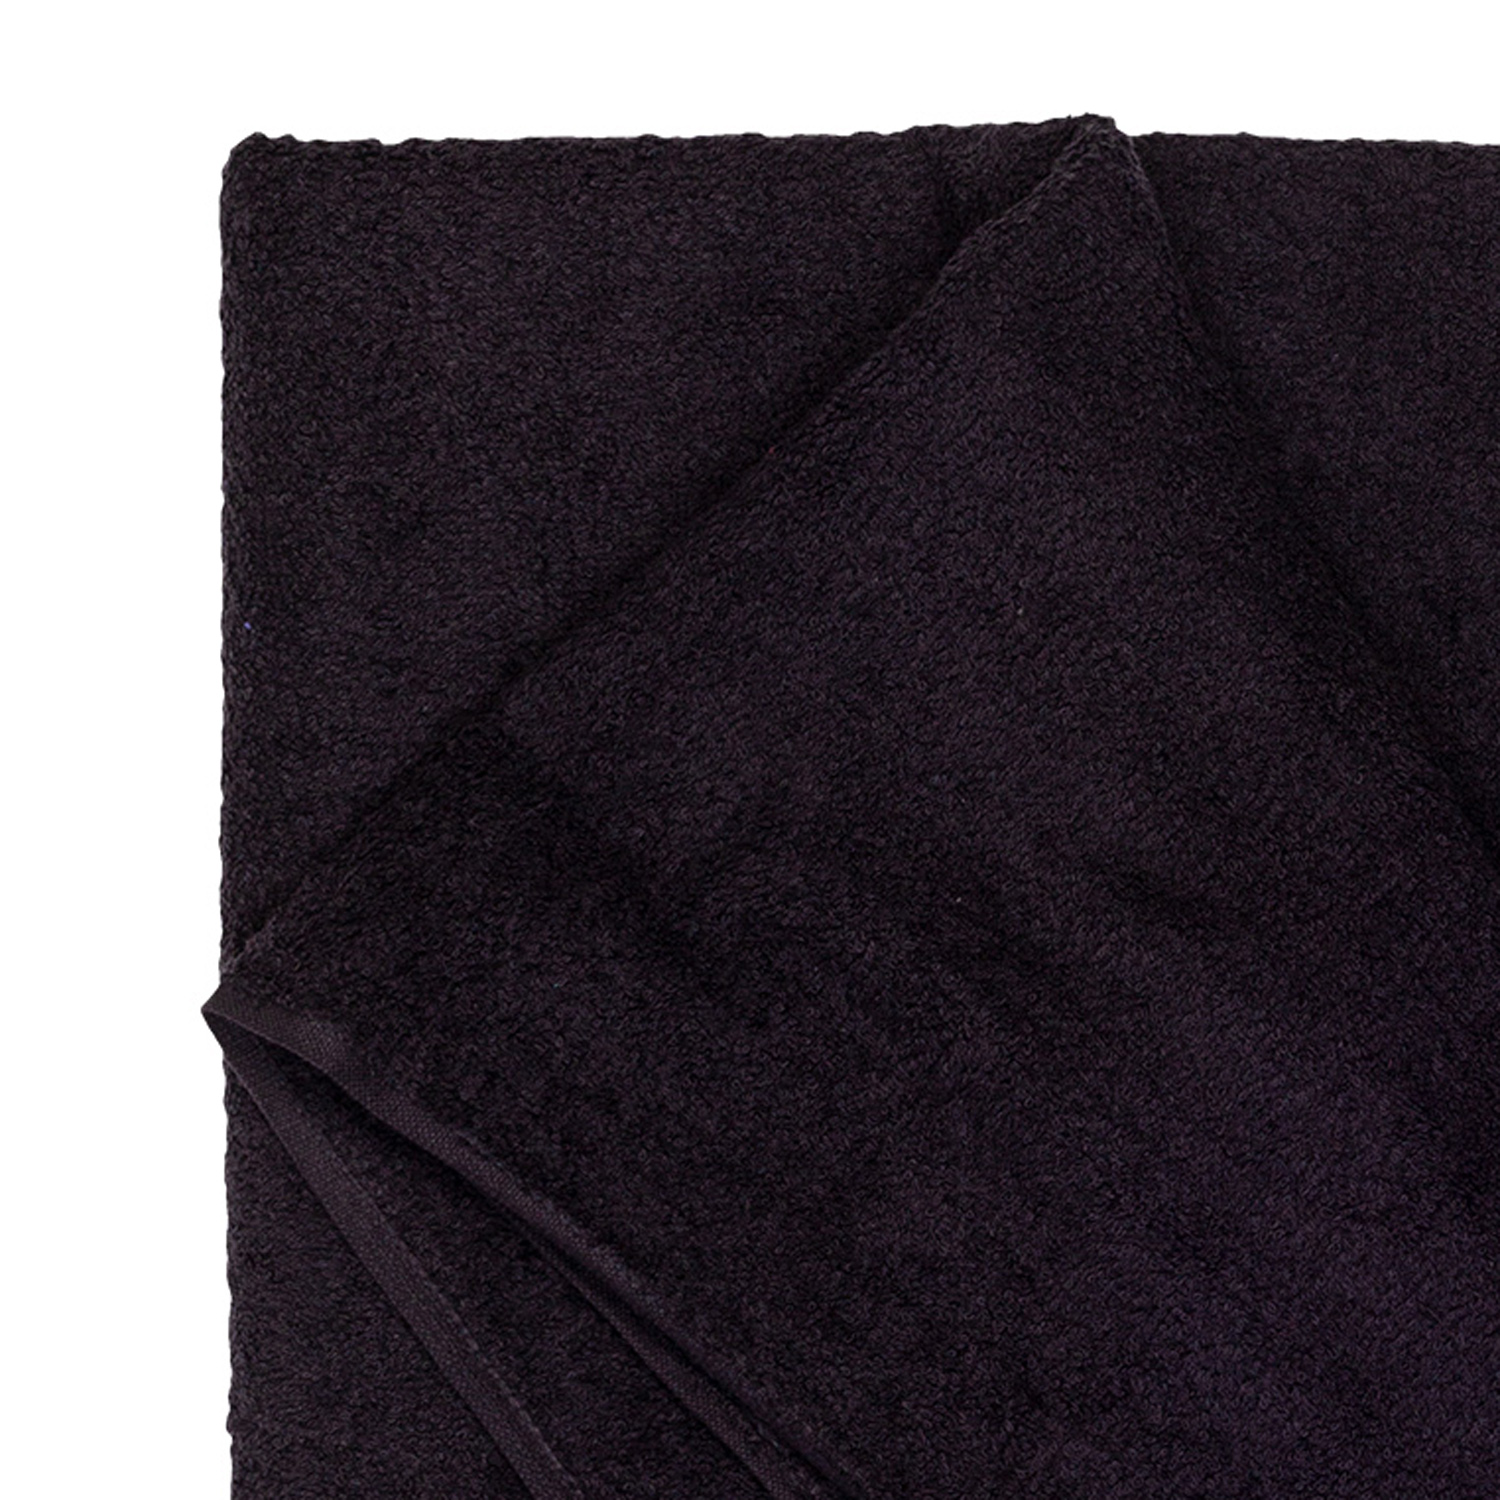 Bath towel series Helsinki in black by Adamo in large sizes 100x220 cm or 155x220 cm